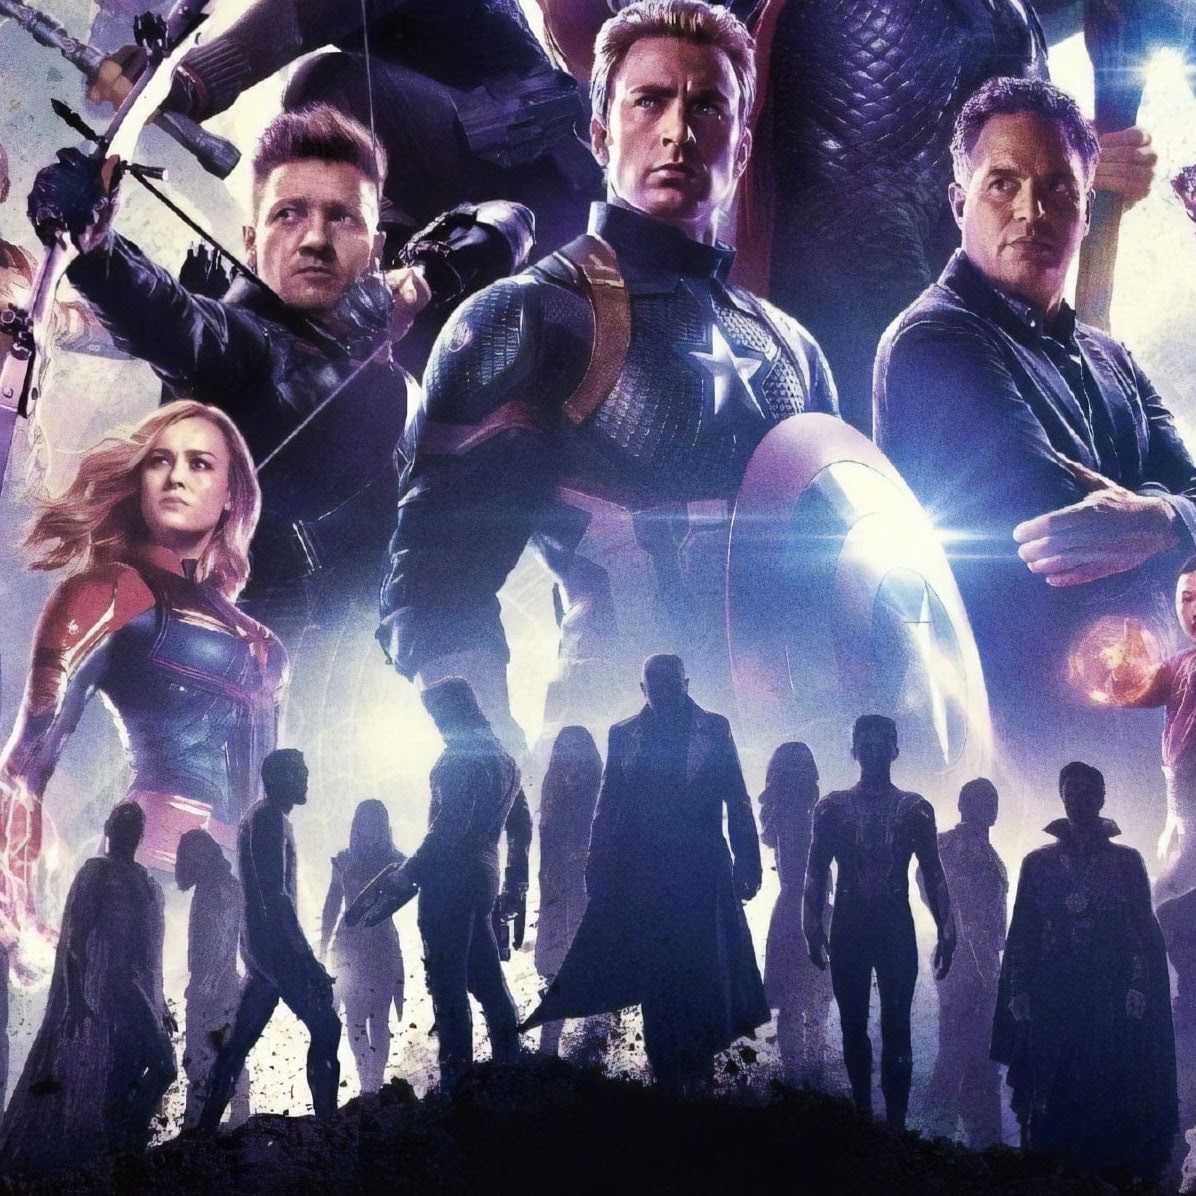 Avengers Endgame 史上最大封切りヒットの アベンジャーズ エンドゲーム で 最も活躍をしていたヒーローは誰だったのか メイン キャストの登場時間を計測してみた出番のランキング Cia Movie News